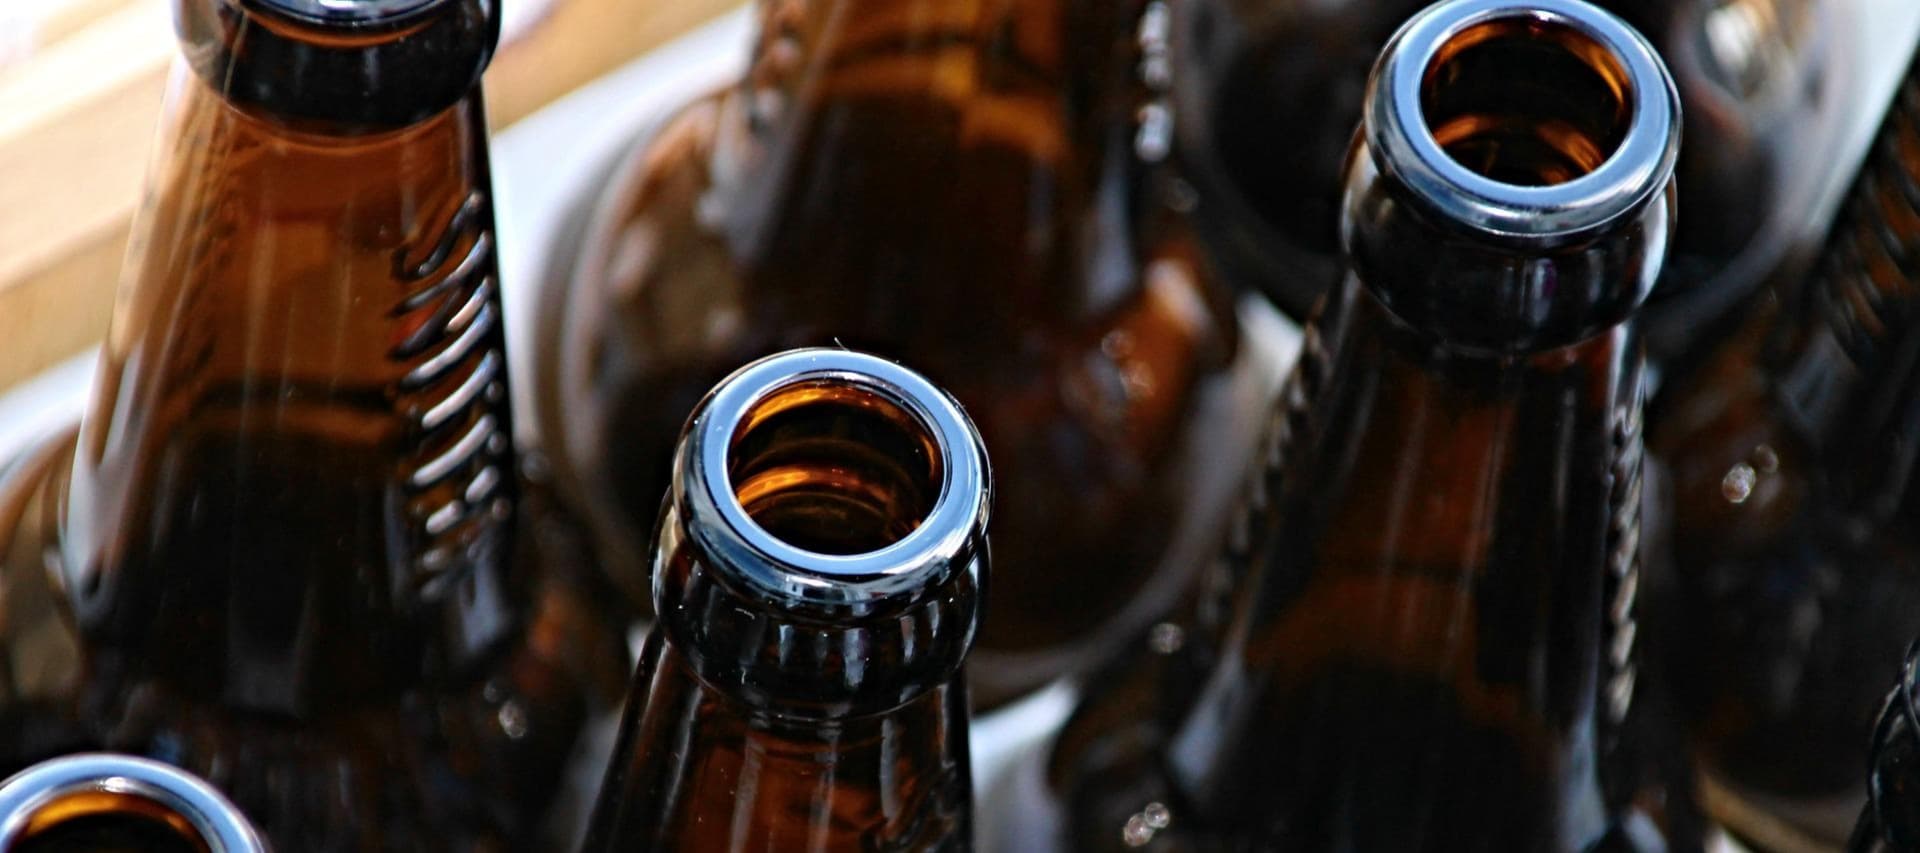 Фото новости: "Пивовары стали экономить на этикетках для бутылок"